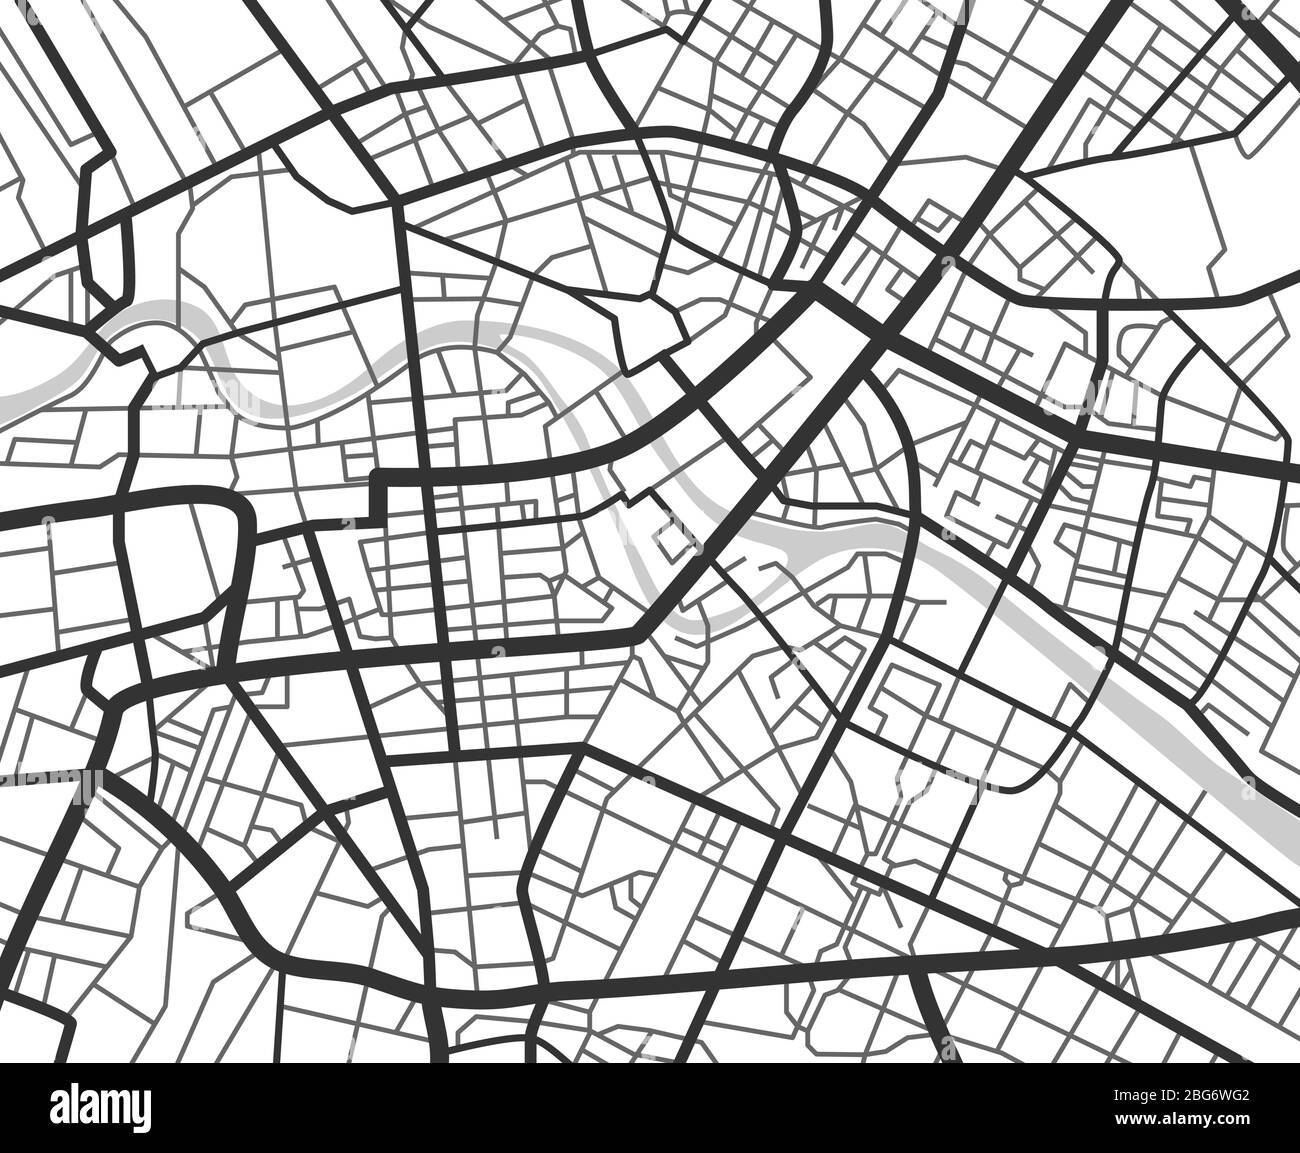 Abstrakte Stadtnavigationsplan mit Linien und Straßen. Vektor schwarz-weiß Stadtplanung Schema. Abbildung des Plans Straßenkarte, Straßengrafik navig Stock Vektor